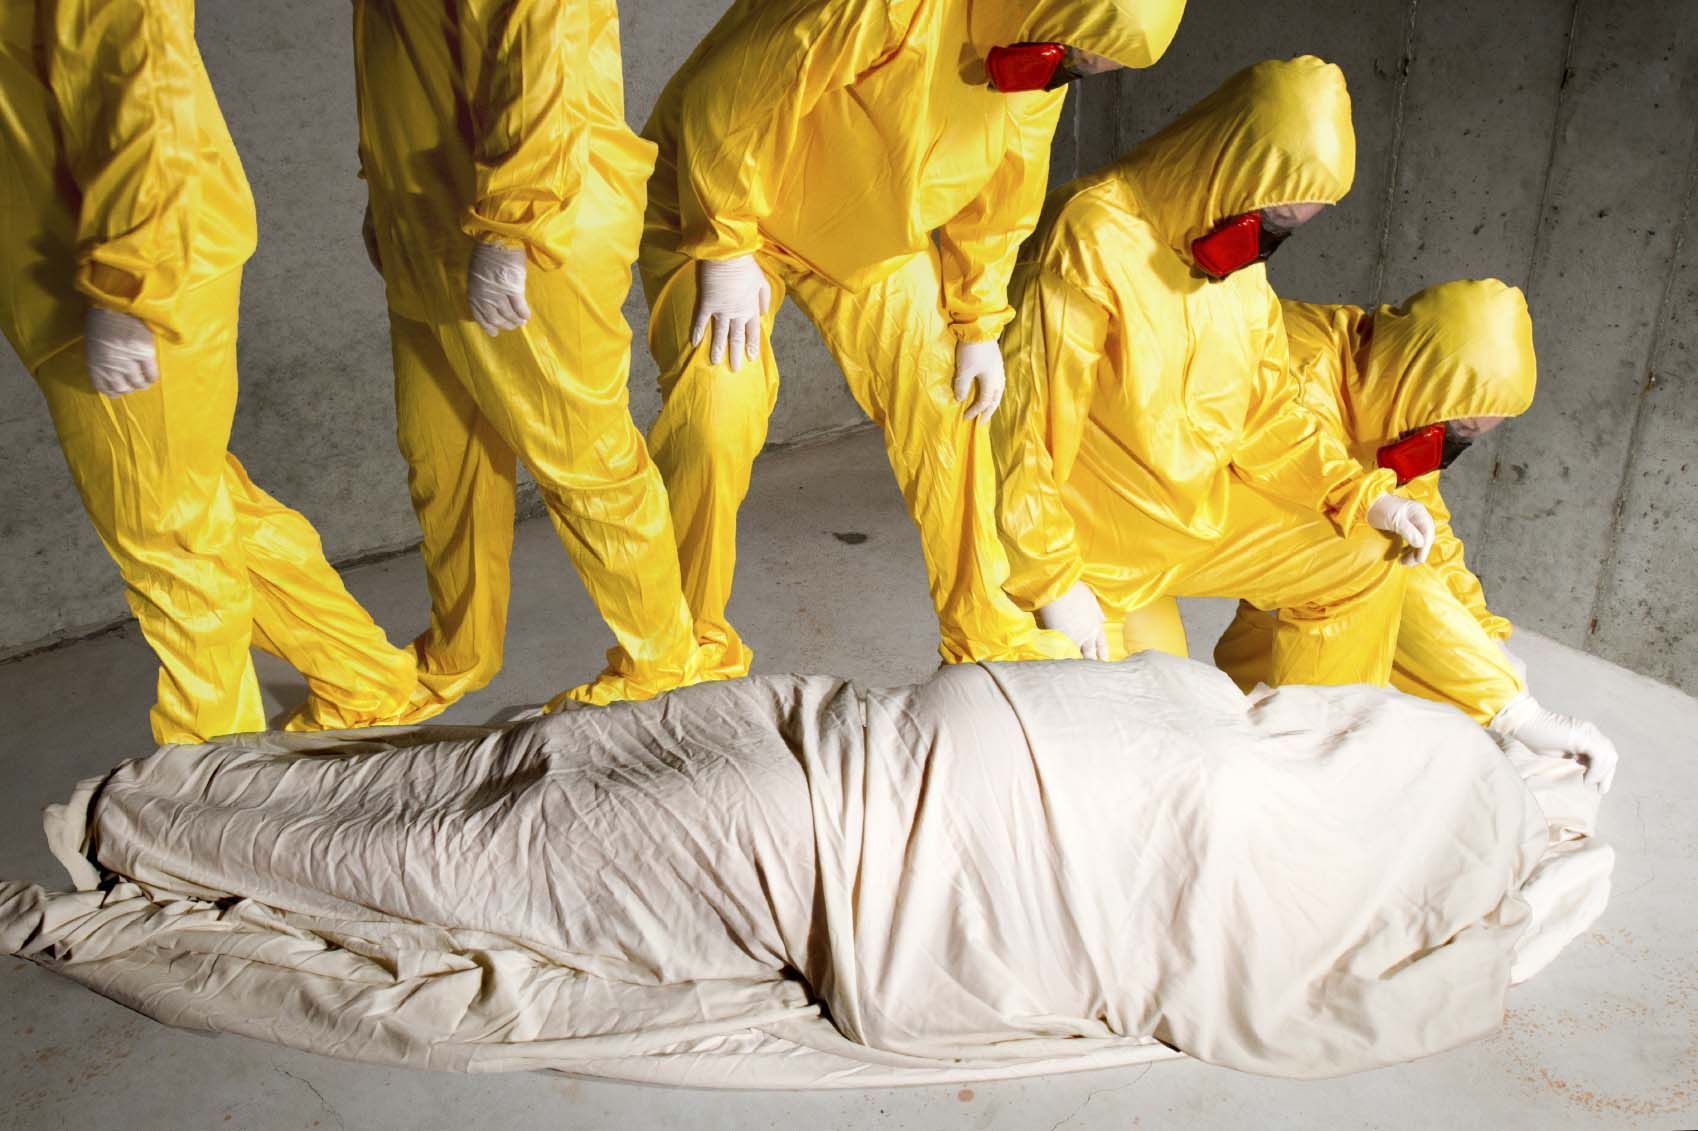 كيف يتم دفن المتوفي بمرض فيروس الإيبولا حسب توصيات منظمة الصحة العالمية